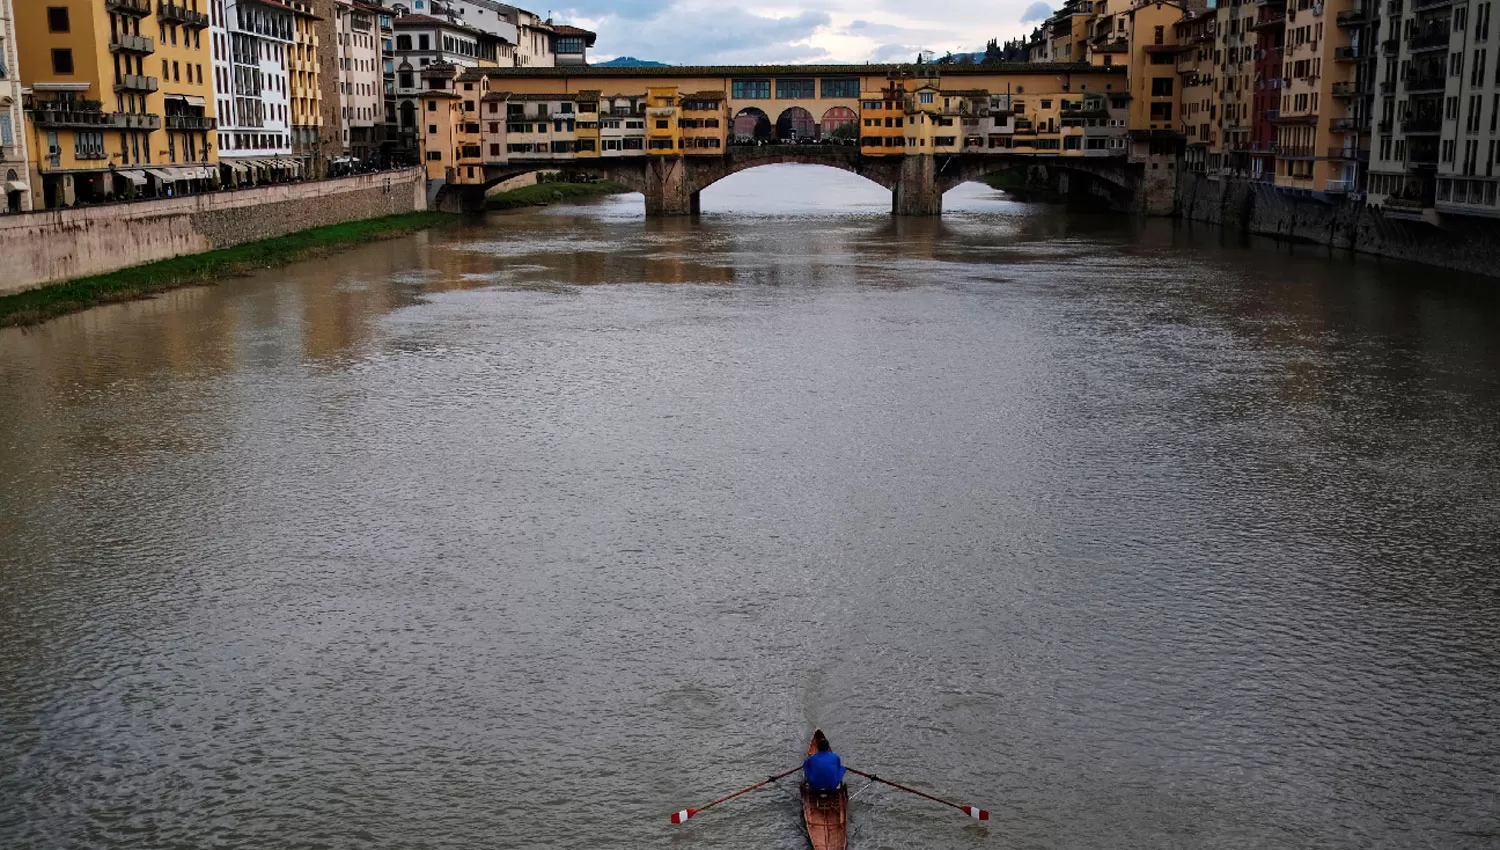 FLORENCIA. Ponte Vecchio, sobre el río Arno, es una de las postales más reconocidas de Italia.